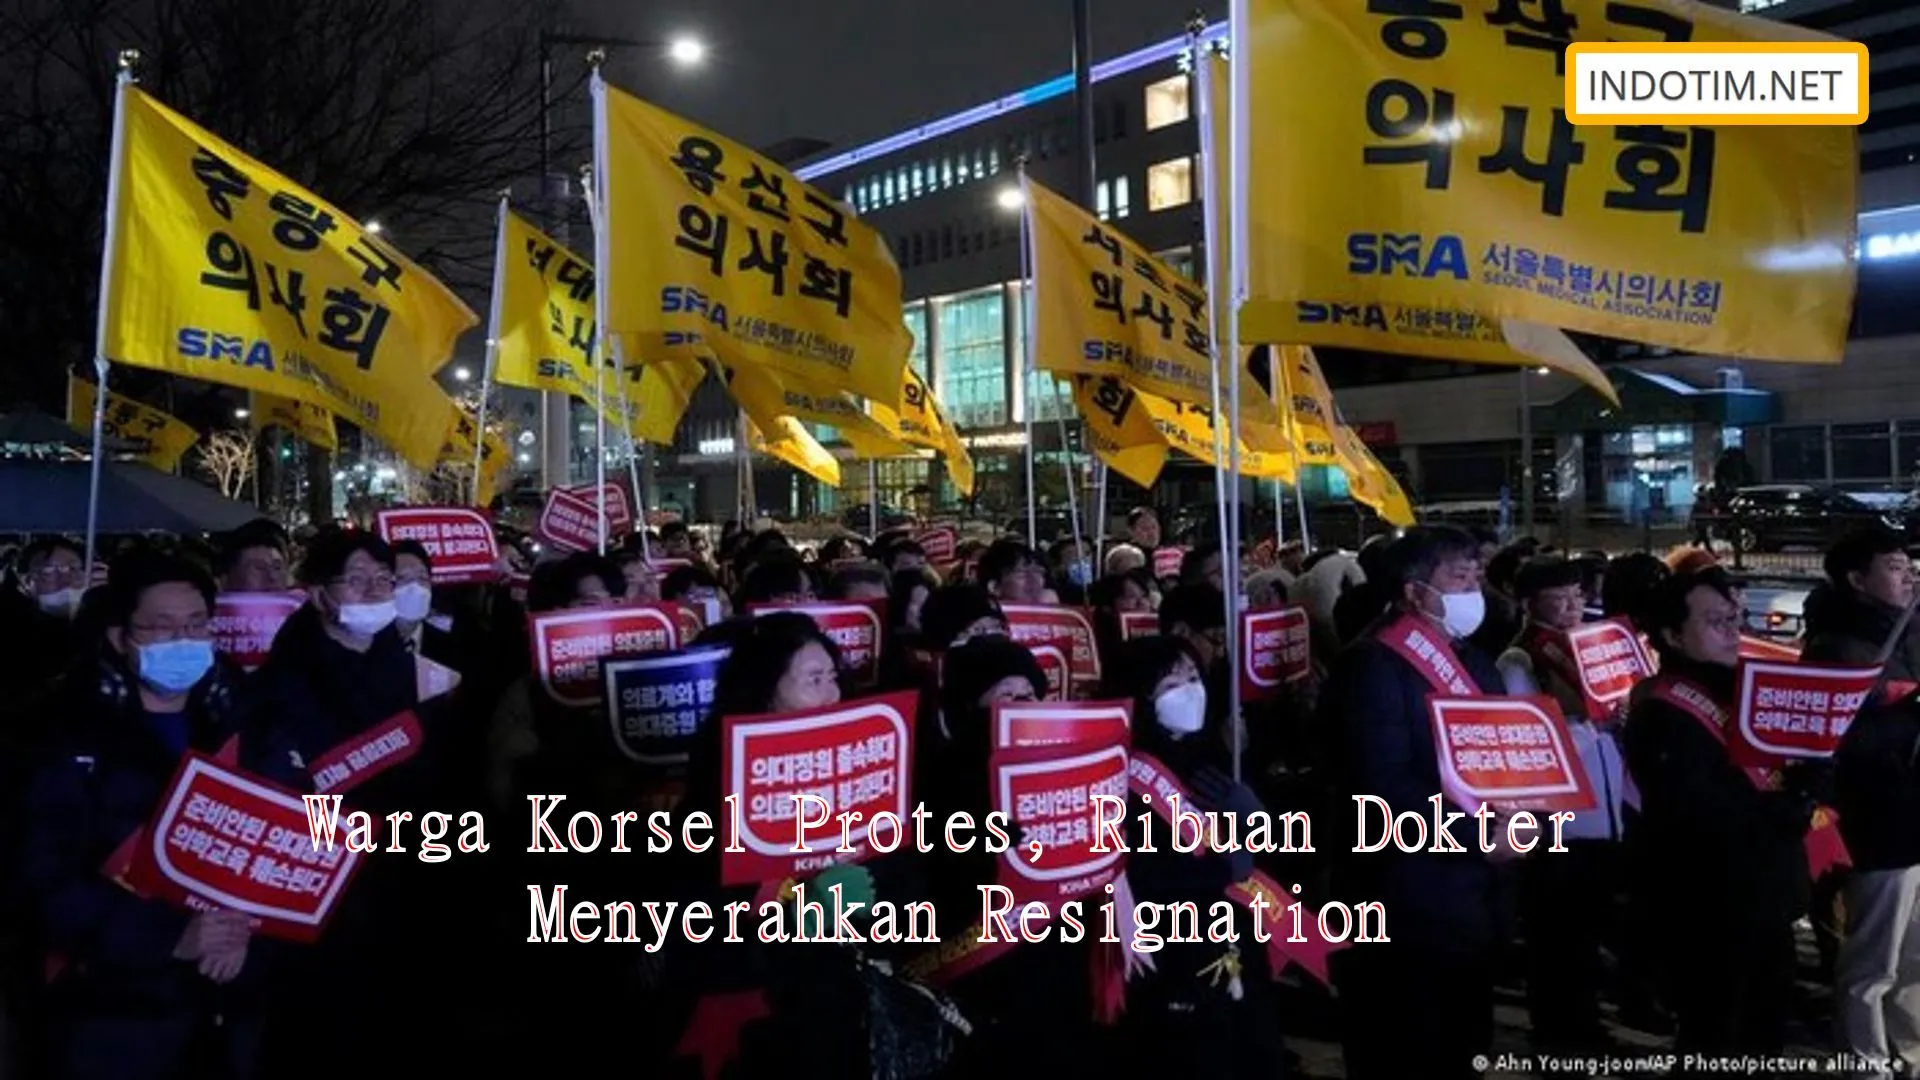 Warga Korsel Protes, Ribuan Dokter Menyerahkan Resignation